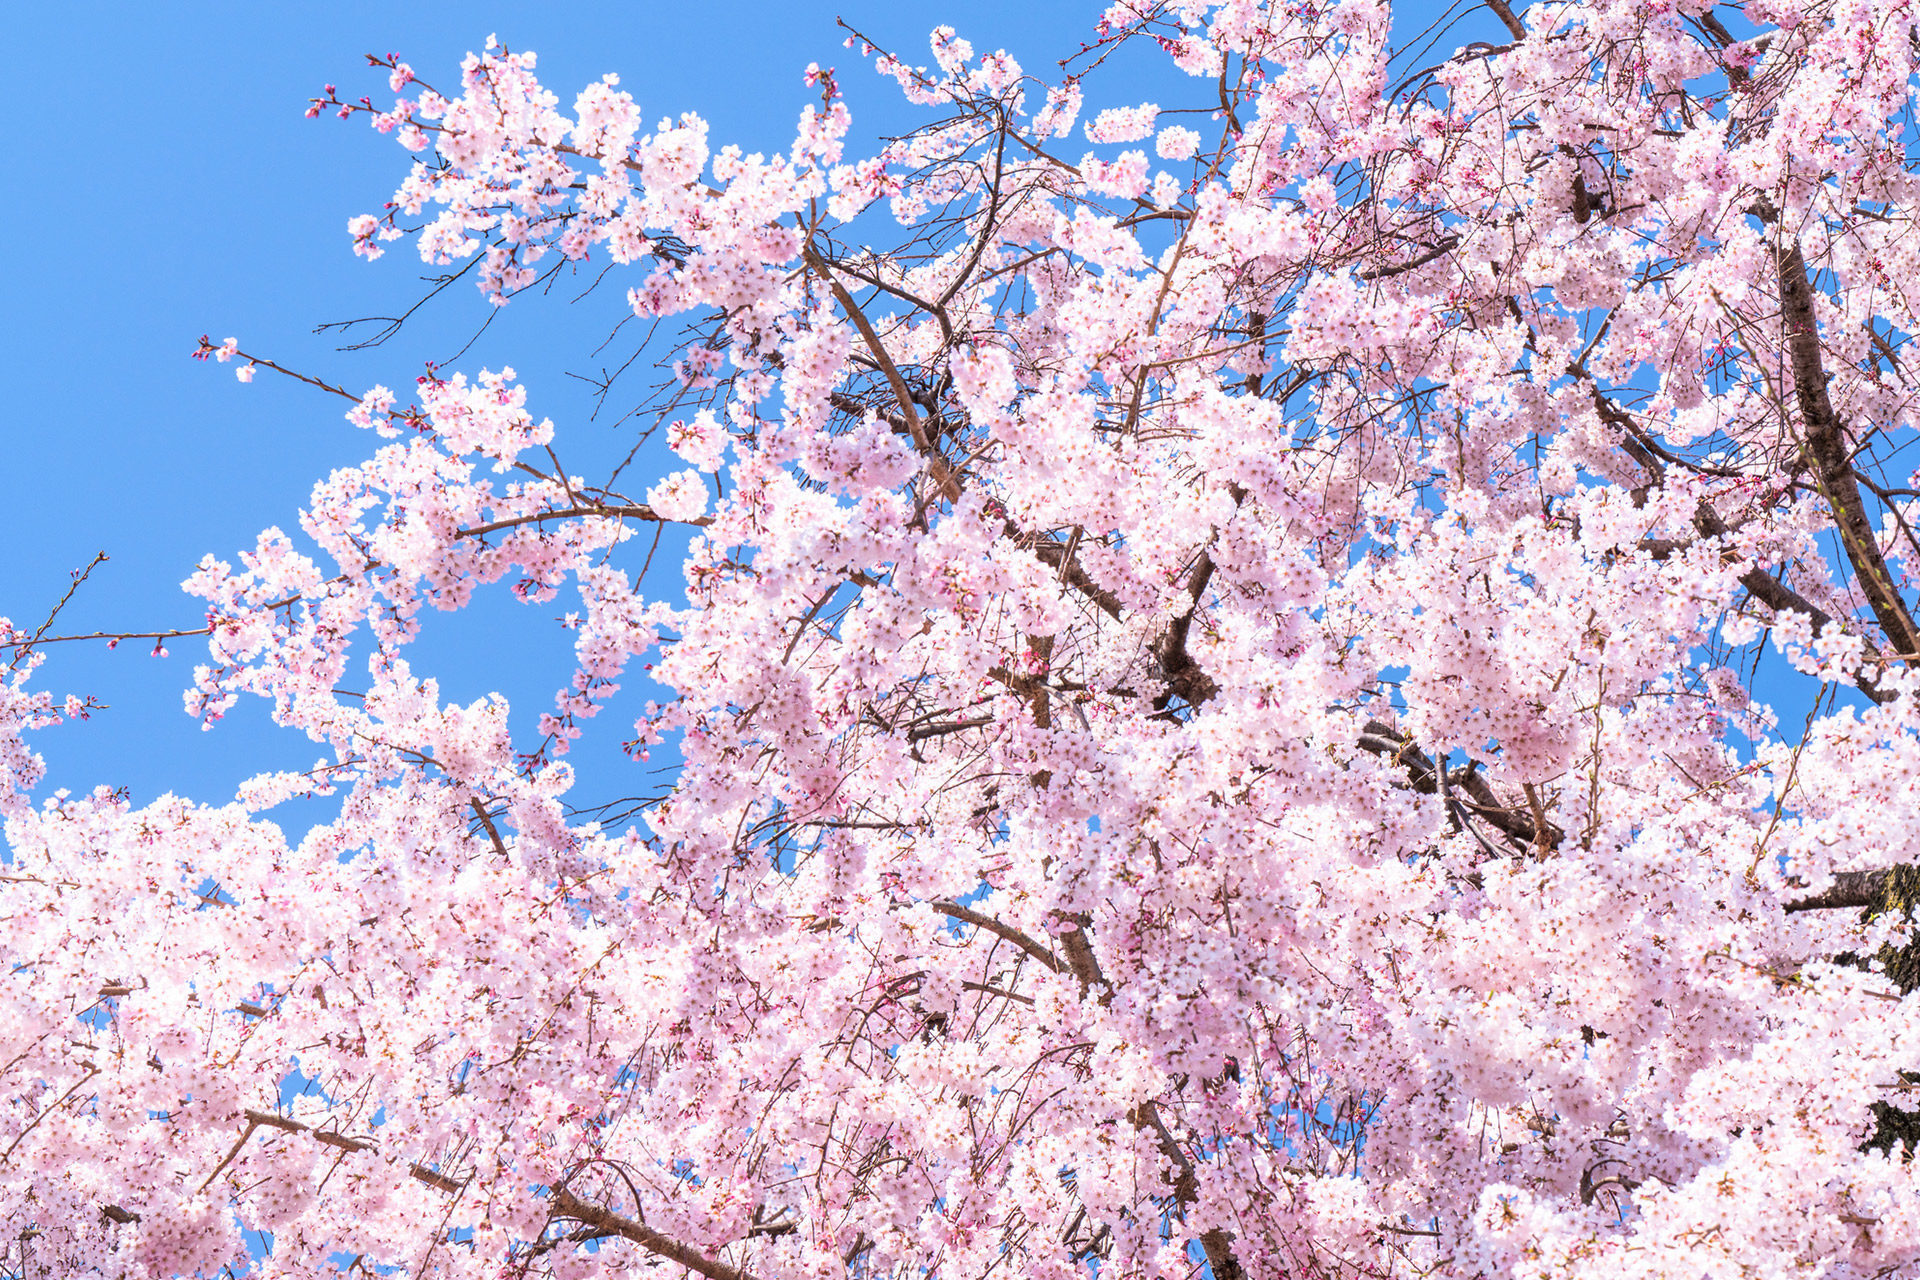 京都の桜は圧巻の美しさ ここは抑えておくべき名所マップ Caedekyoto カエデ京都 紅葉と伝統美を引き継ぐバッグ